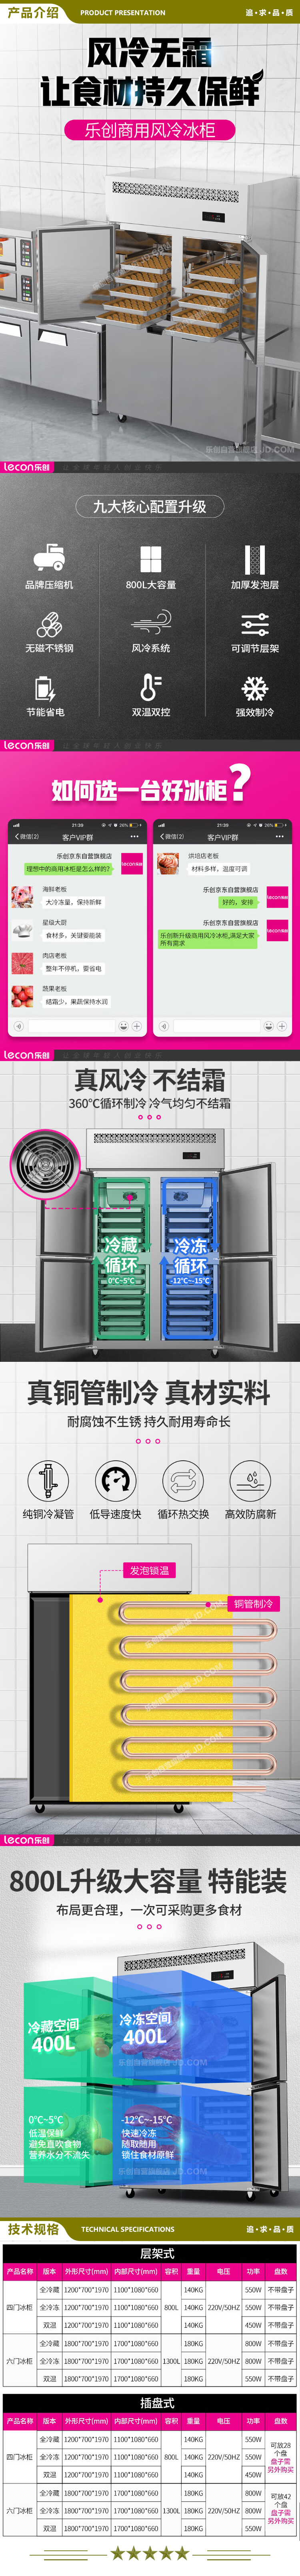 乐创(lecon) LC-LMBG01 冷藏商用六门冰柜厨房冰箱双温冷藏冷冻餐饮立式后厨保鲜柜冷柜风冷插盘式  2.jpg